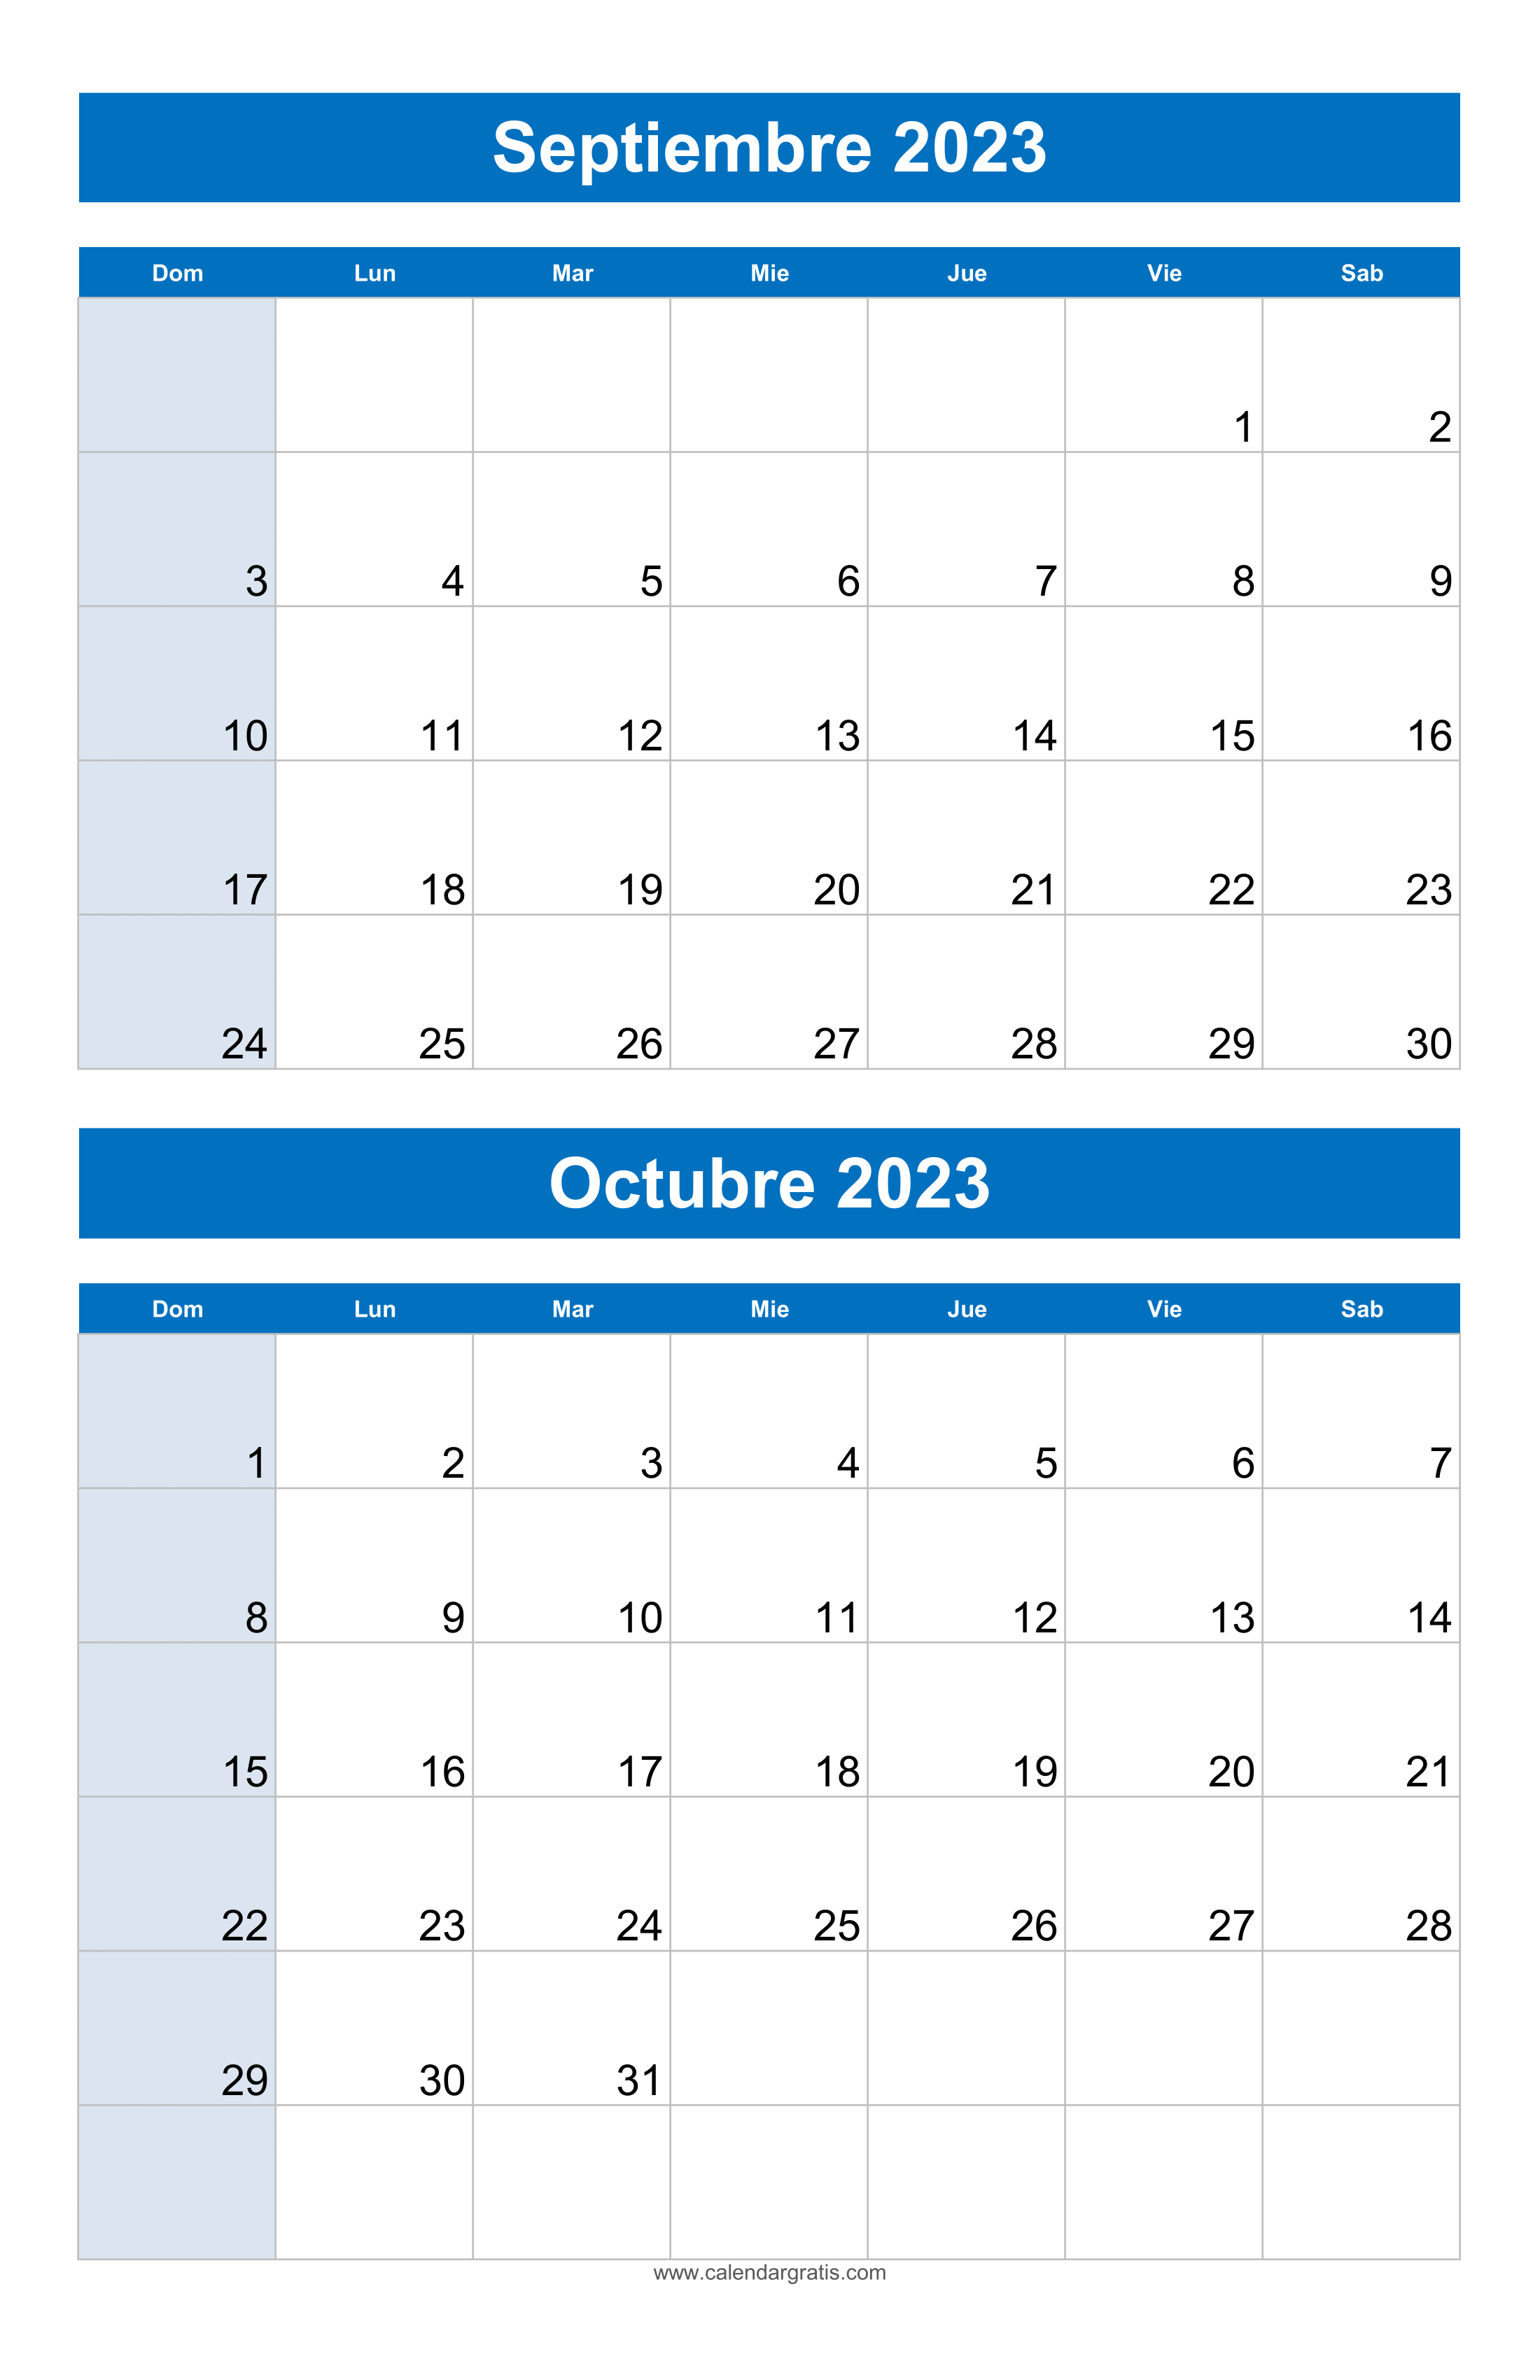 Imagen de 'Calendario Septiembre Octubre 2023' listo para imprimir, destacando en diseño vibrante y colorido con todos los días del mes claramente marcados.